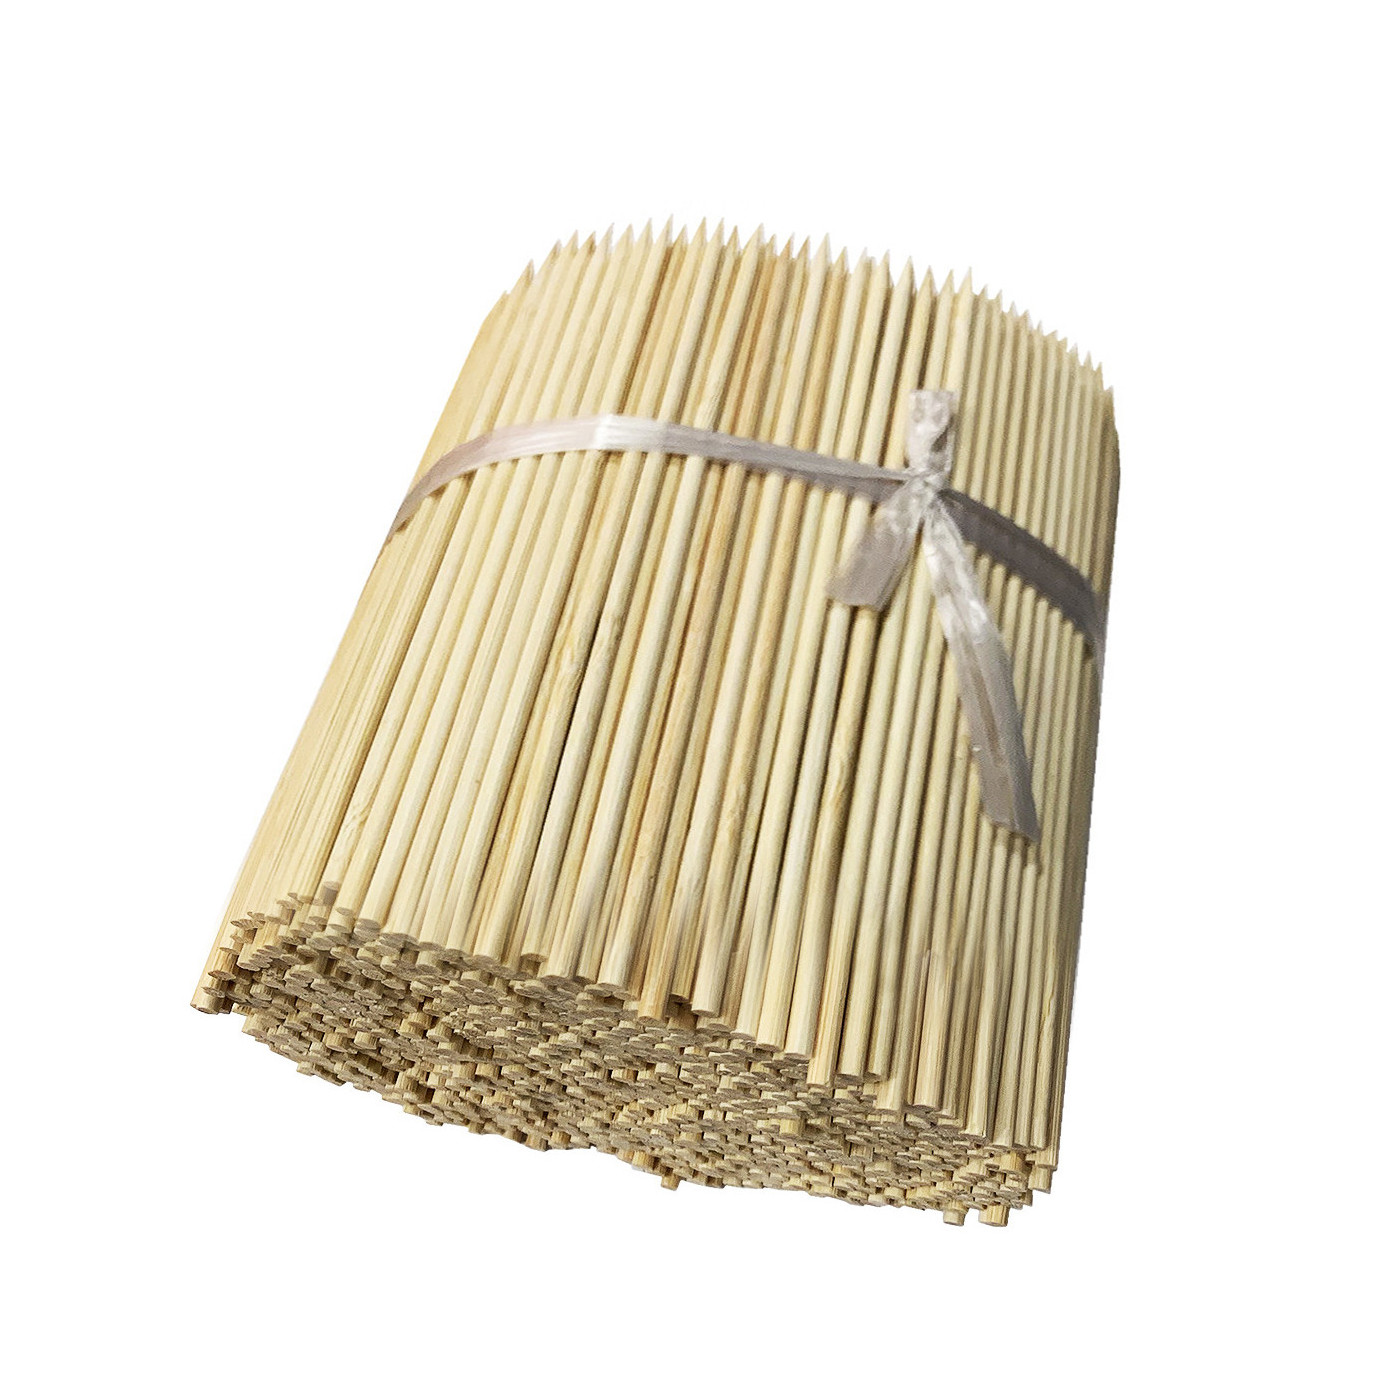 Set van 1000 bamboe stokken (4 mm x 18 cm)